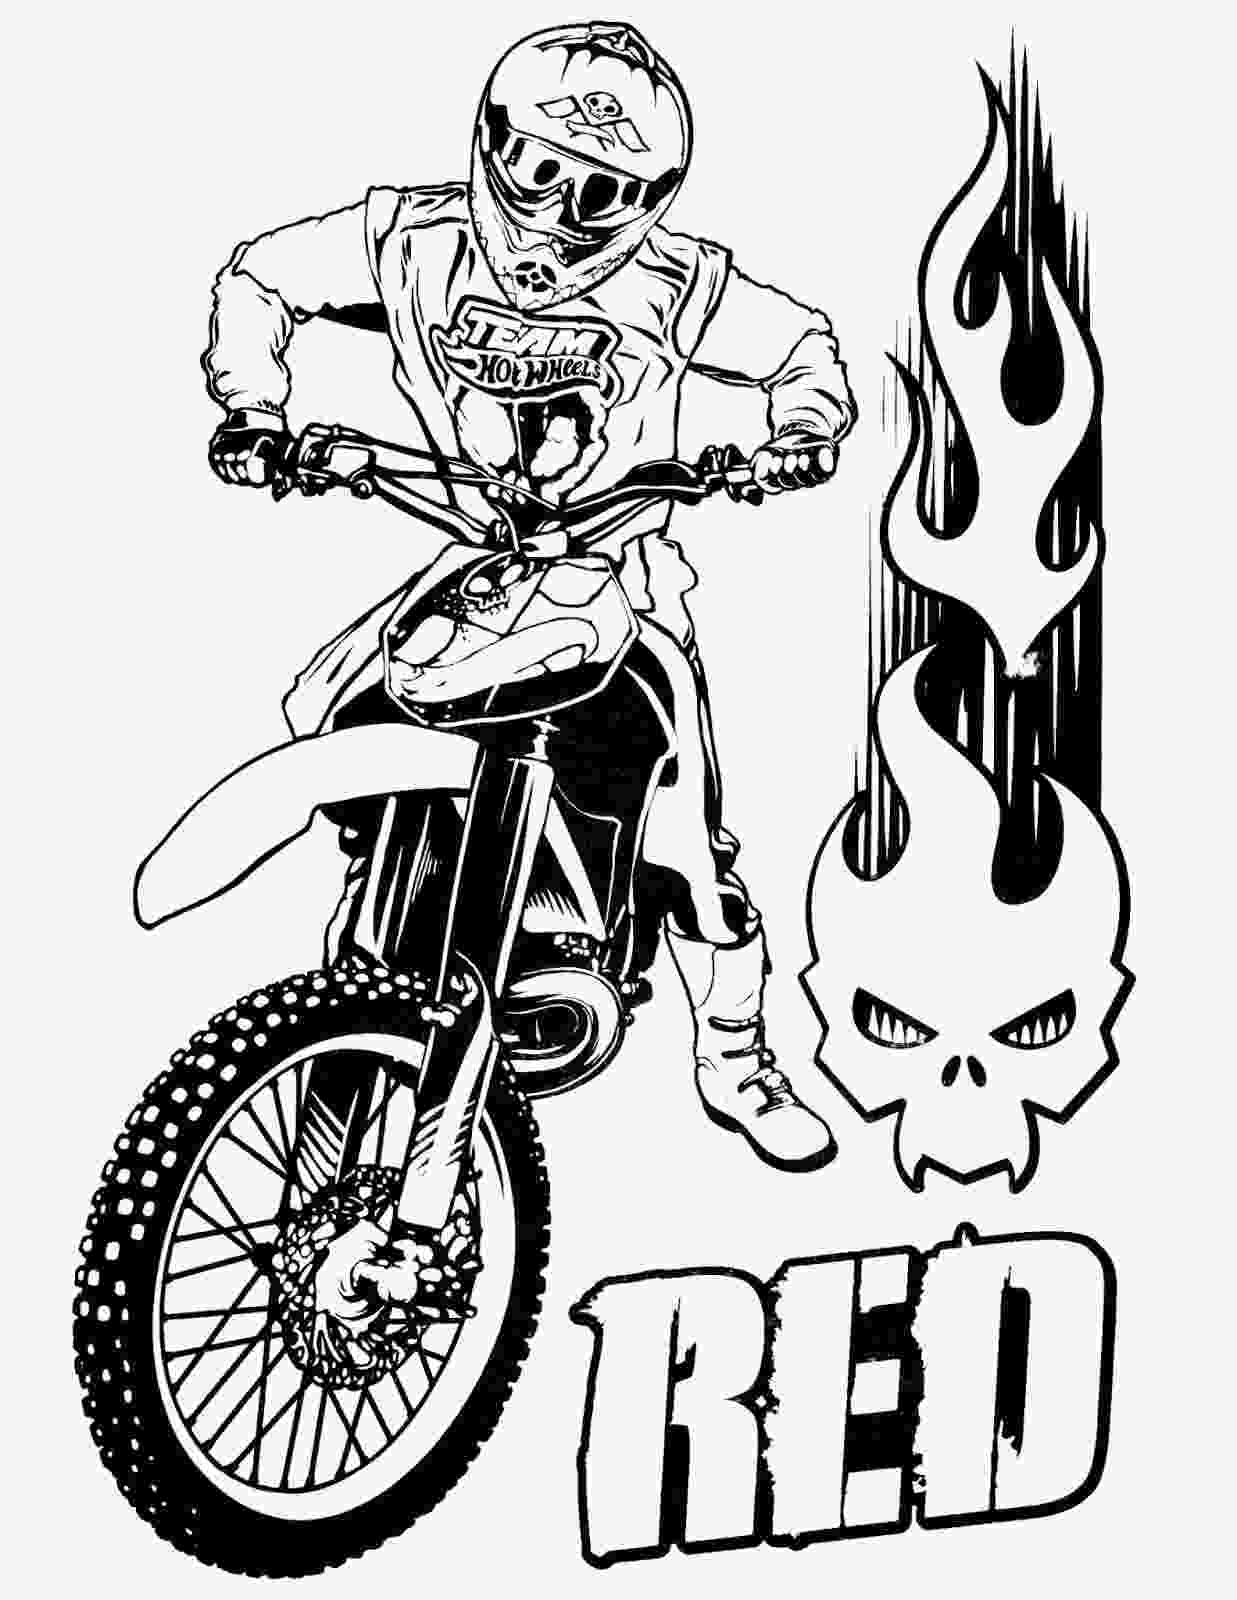 Motocicleta da equipe Hot Wheels Red com piloto da Hot Wheels